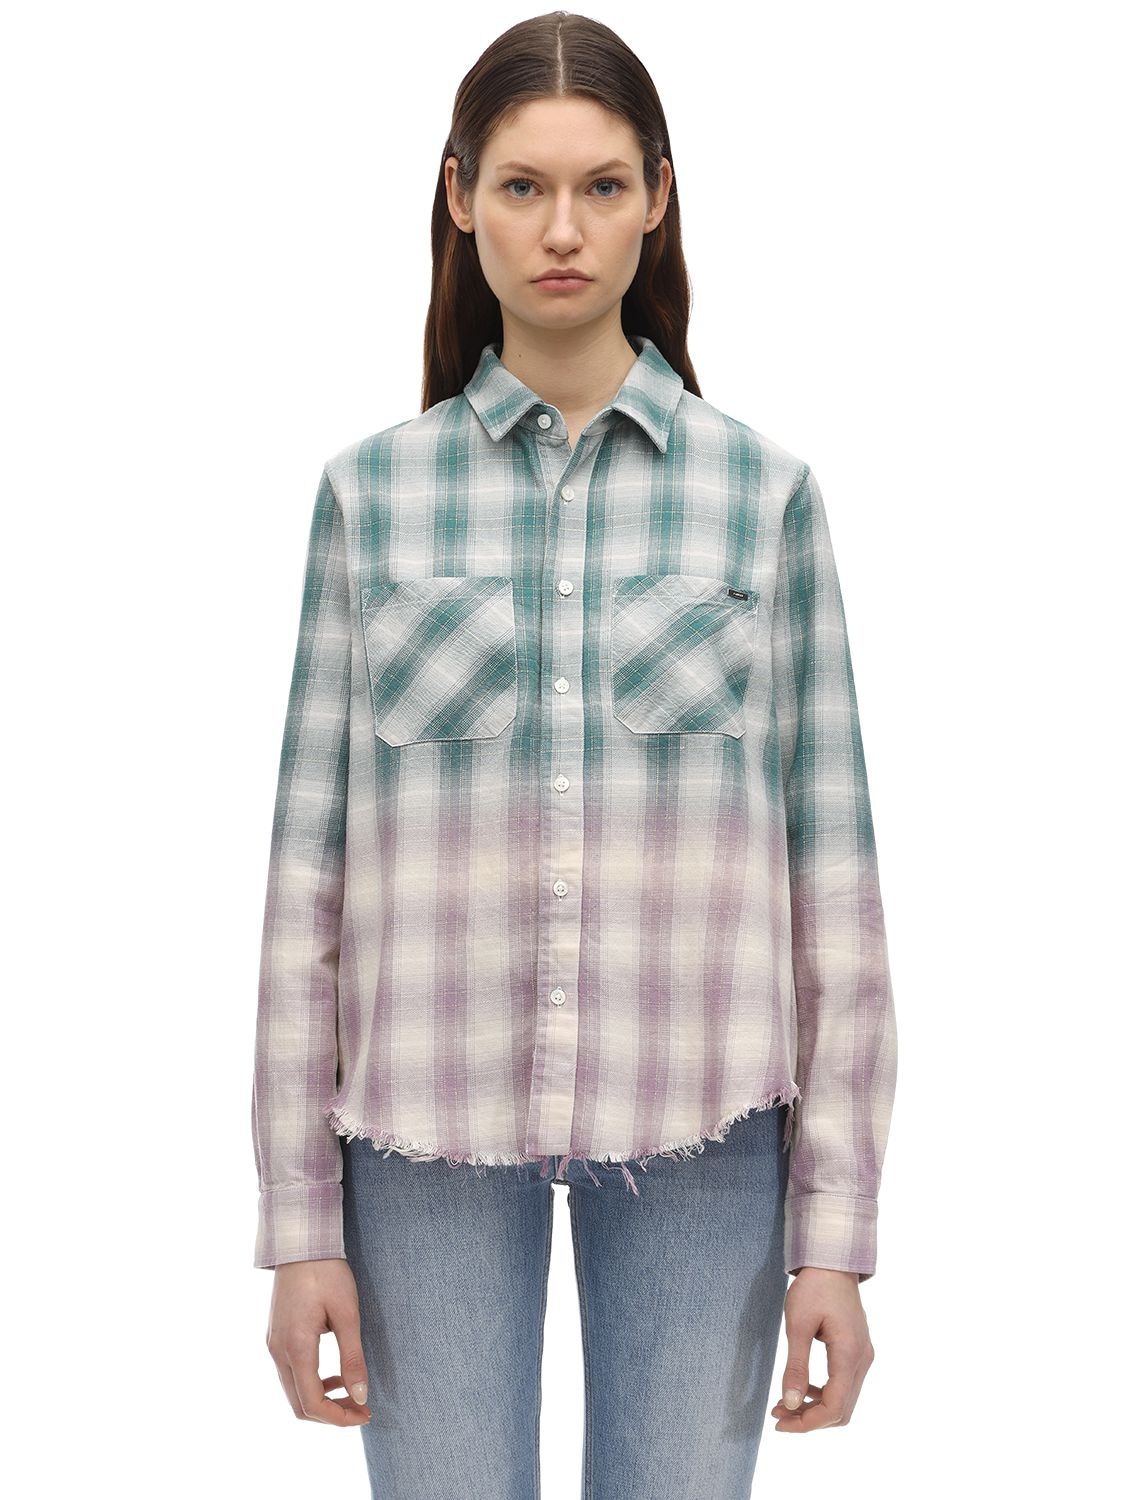 Degradé Lurex Plaid Flannel Shirt